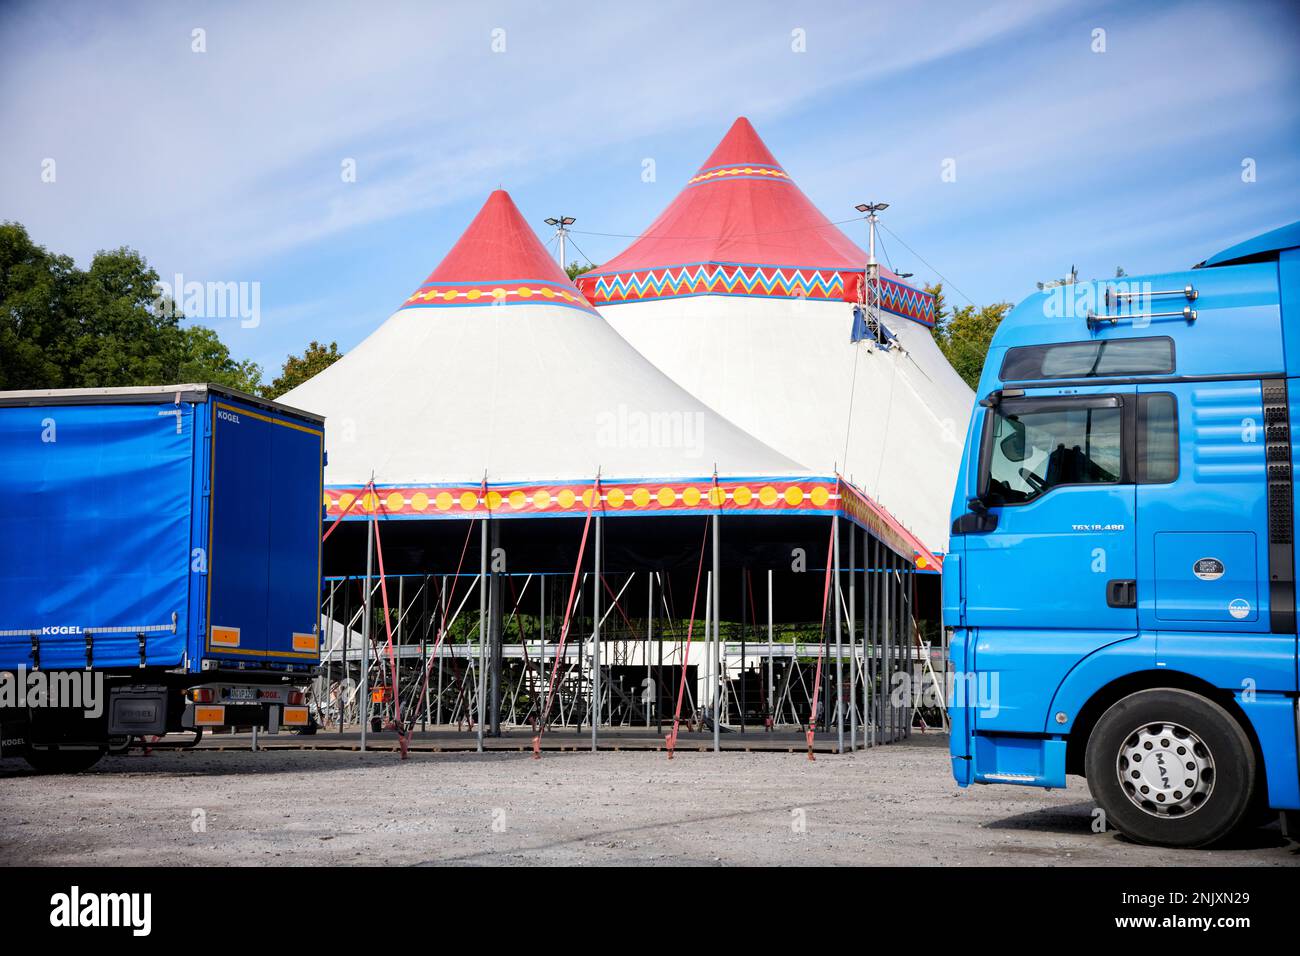 Ein Zirkuszelt das sich im Aufbau befindet vor dem LKWs stehen. Foto de stock